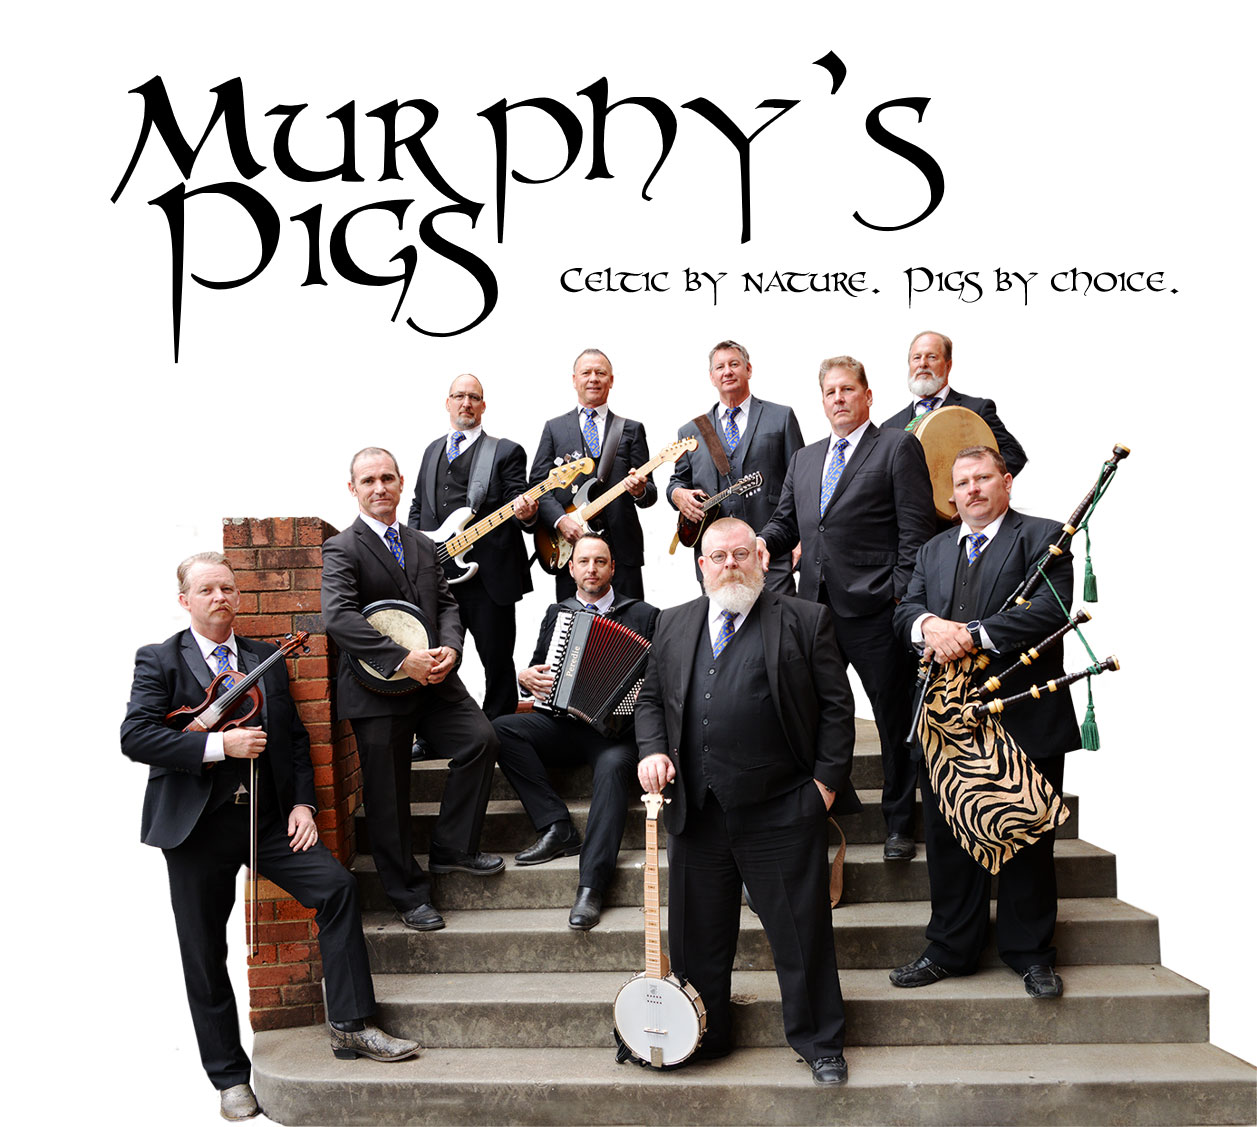 Murphy's Pigs